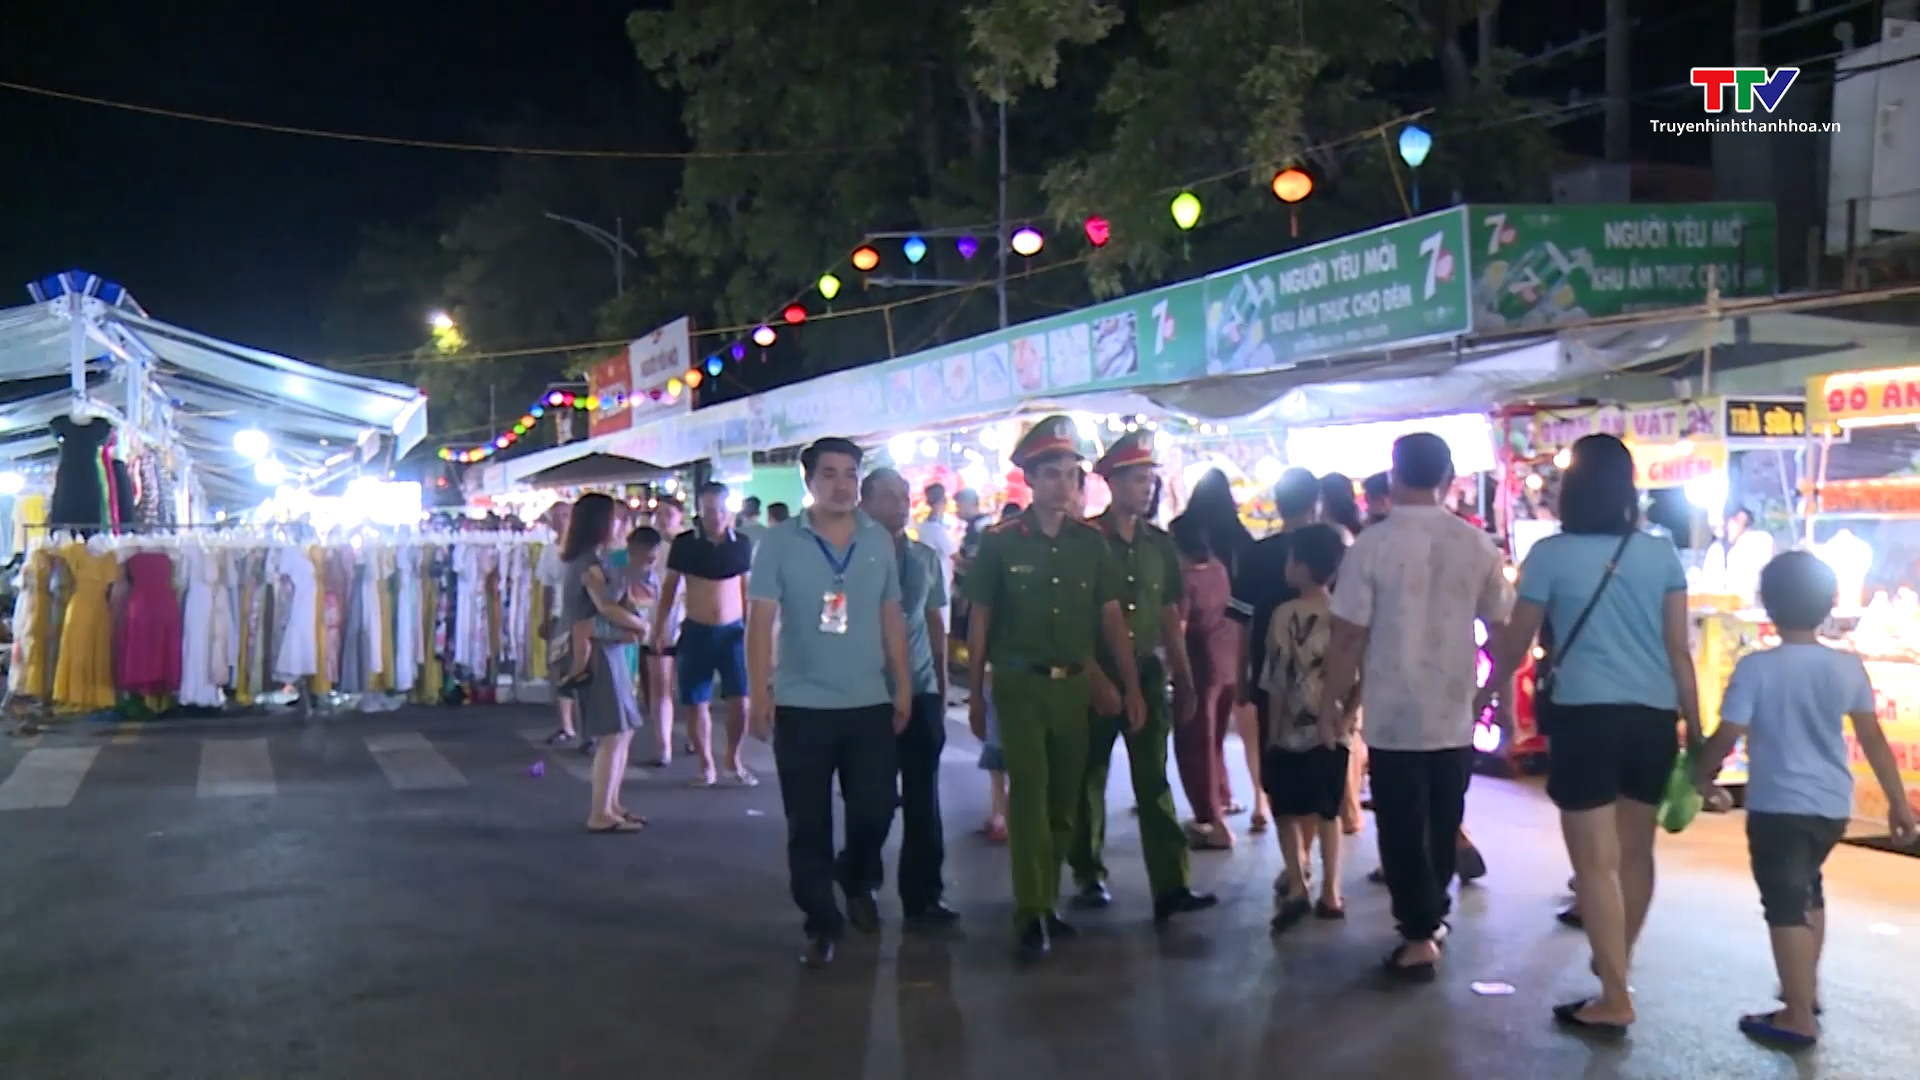 Tuyến phố đi bộ chợ đêm Sầm Sơn thu hút khách du lịch - Ảnh 4.